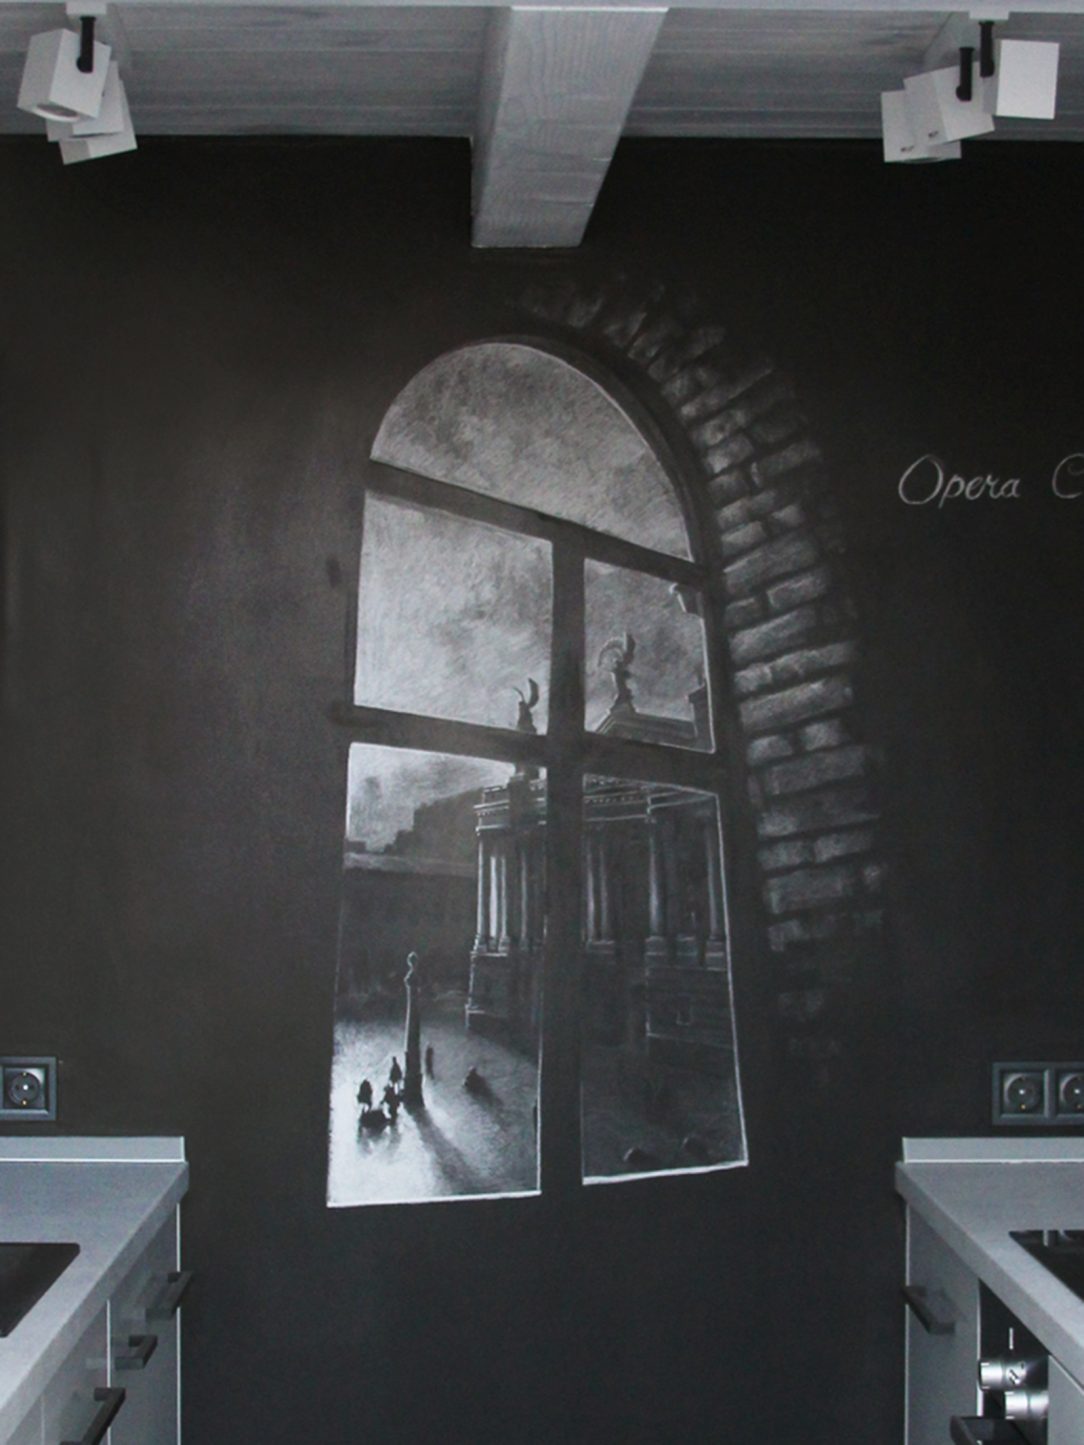 Dekorácia vytvorená z fotografie niekdajšieho okna umiestnená na jedinej čiernej stene bytu